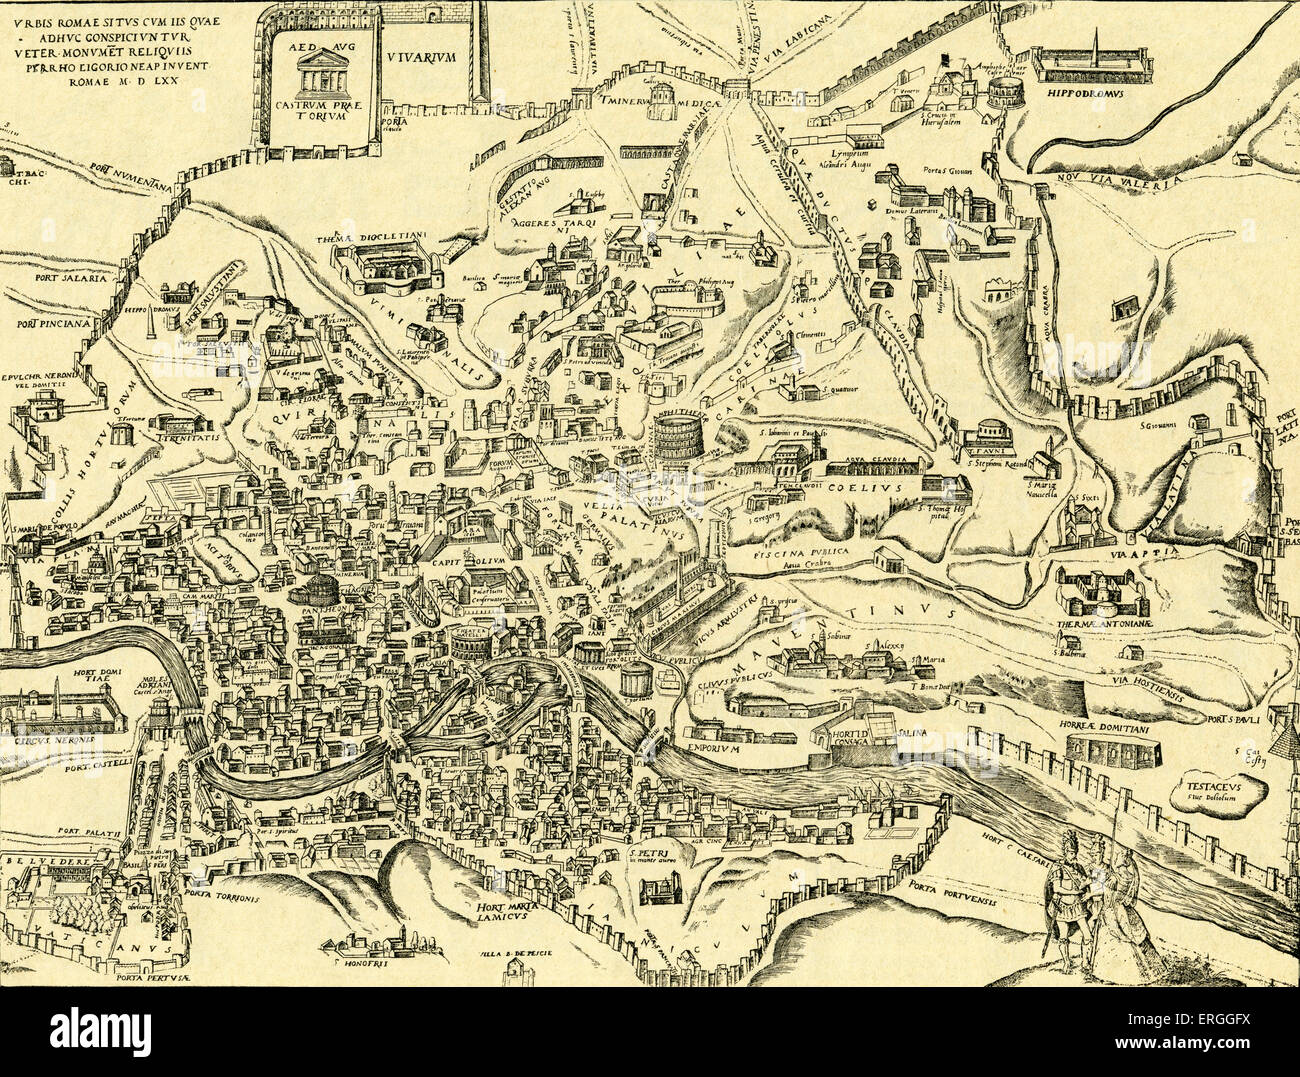 Plan de ville de Rome et ses monuments antiques, dans 'civitas Oreis Terrarum' par Braun et Hogenberg. Livre 2 : 1574 - 1618. L'Italie. Banque D'Images